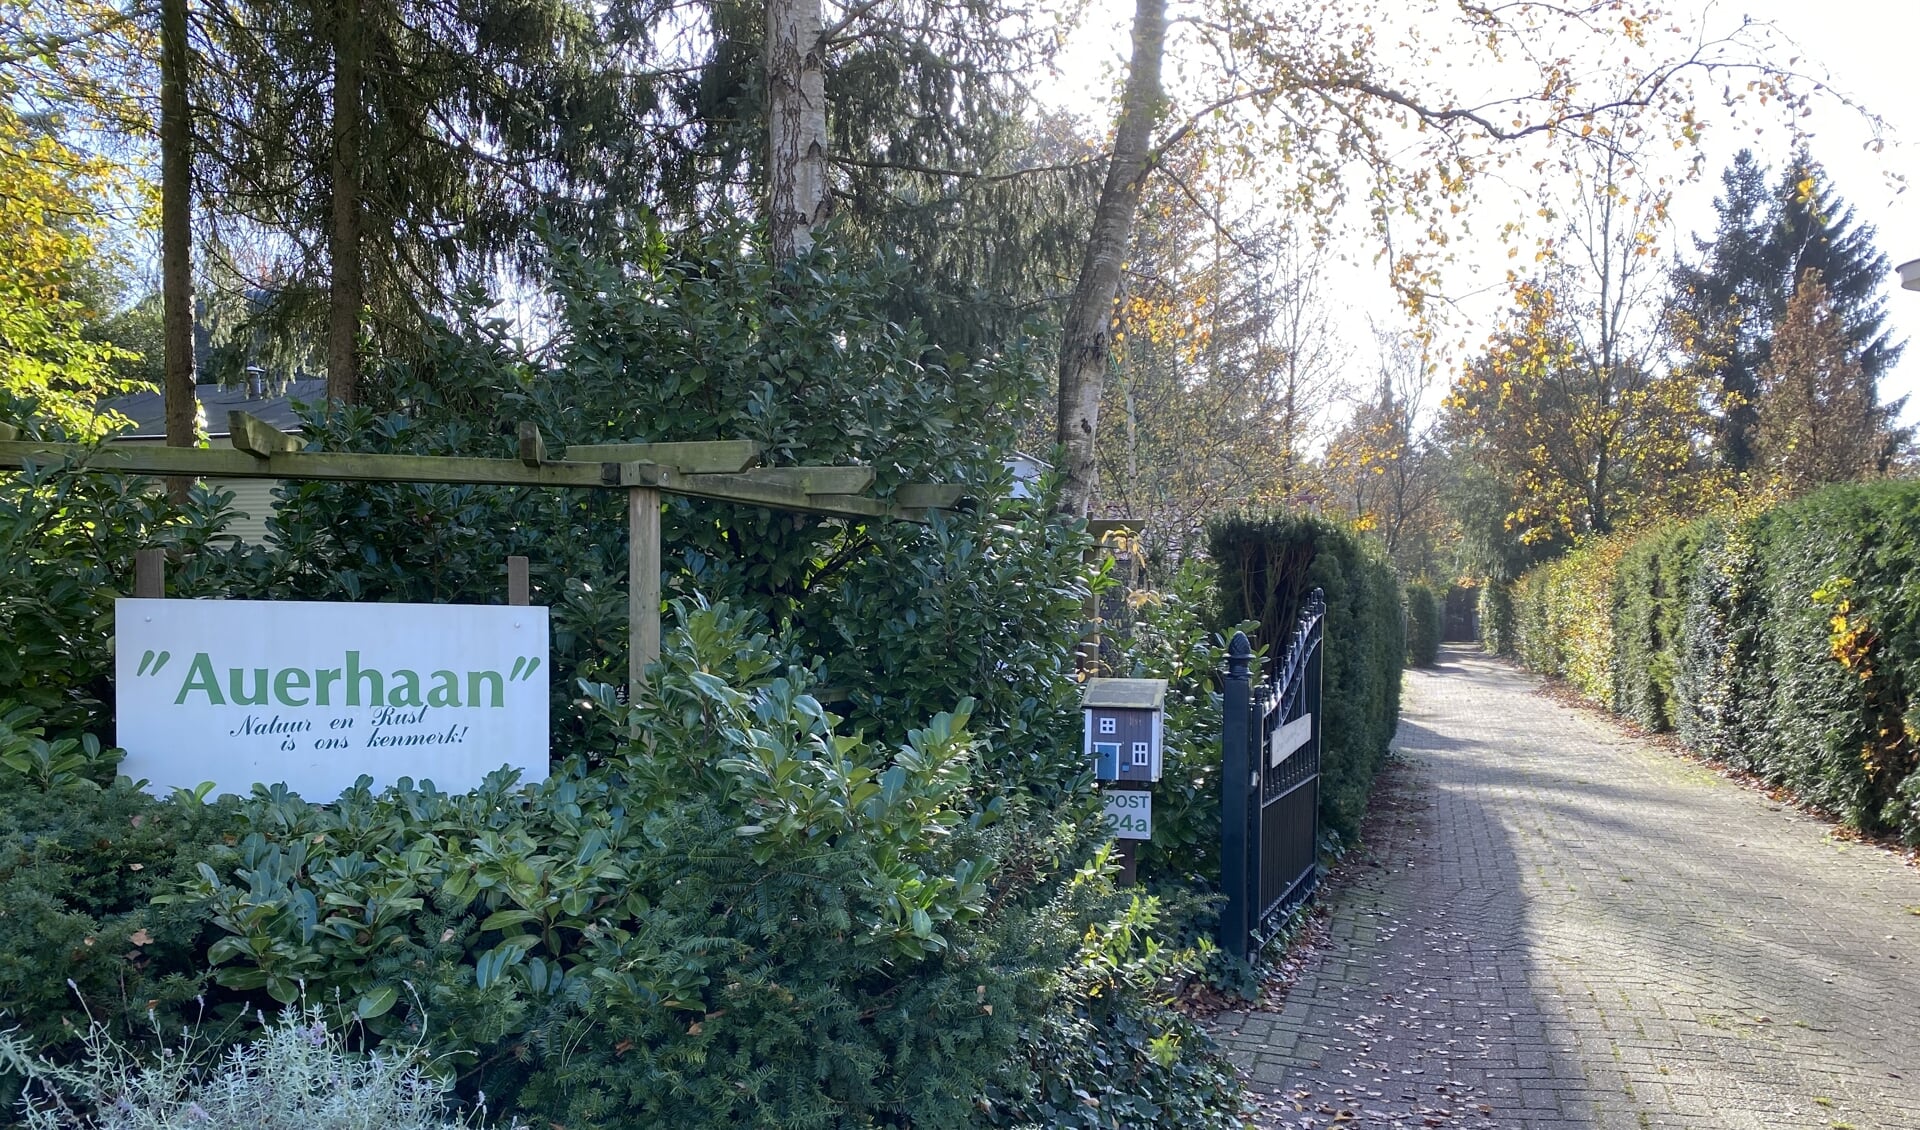 Recreatiepark De Auherhaan gaat waarschijnlijk plaatsmaken voor bos en heide.